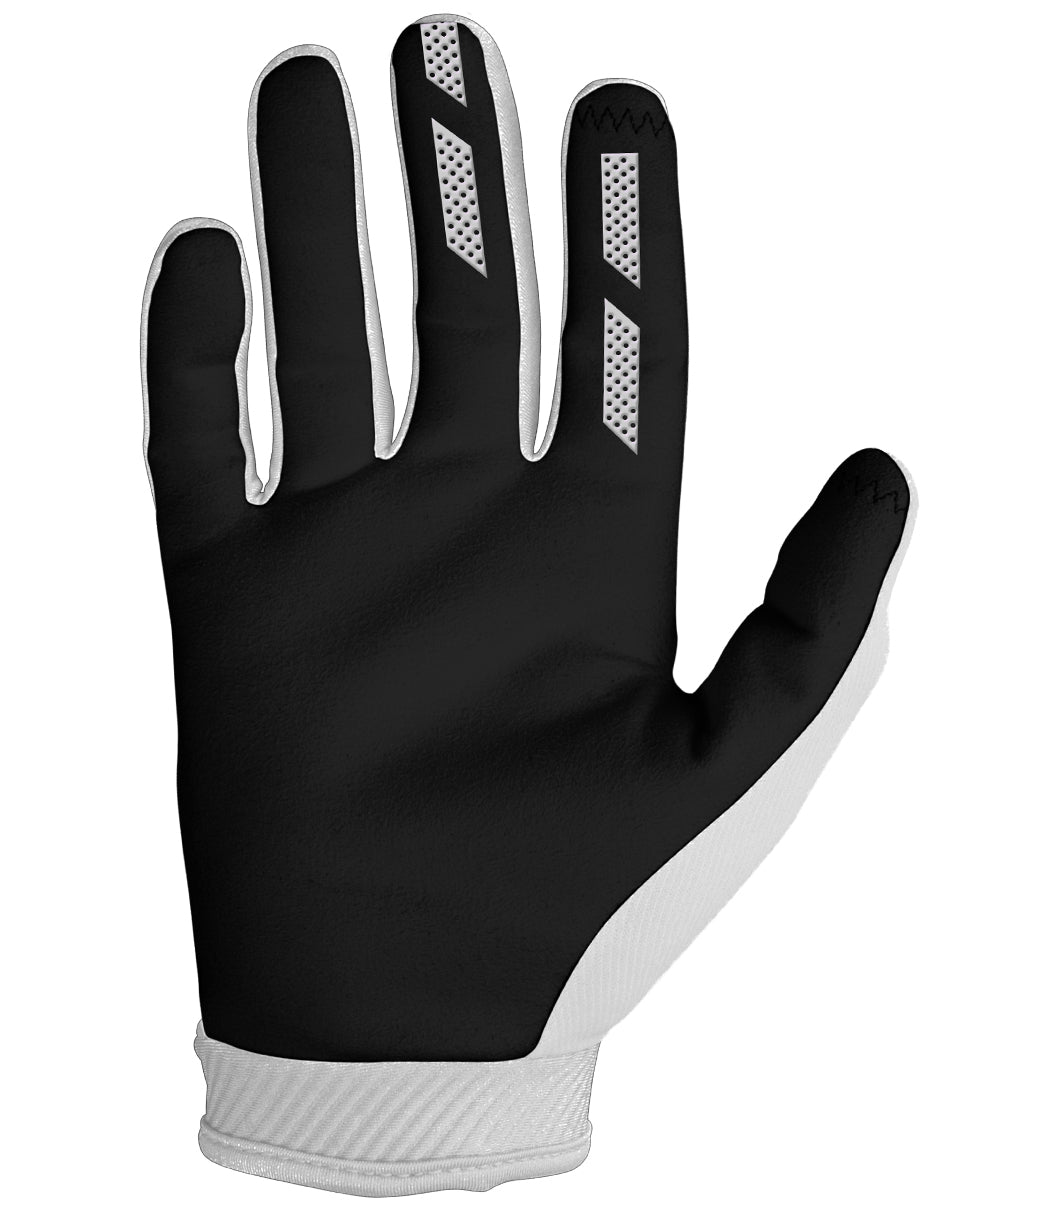 Annex 7 Dot Glove - White